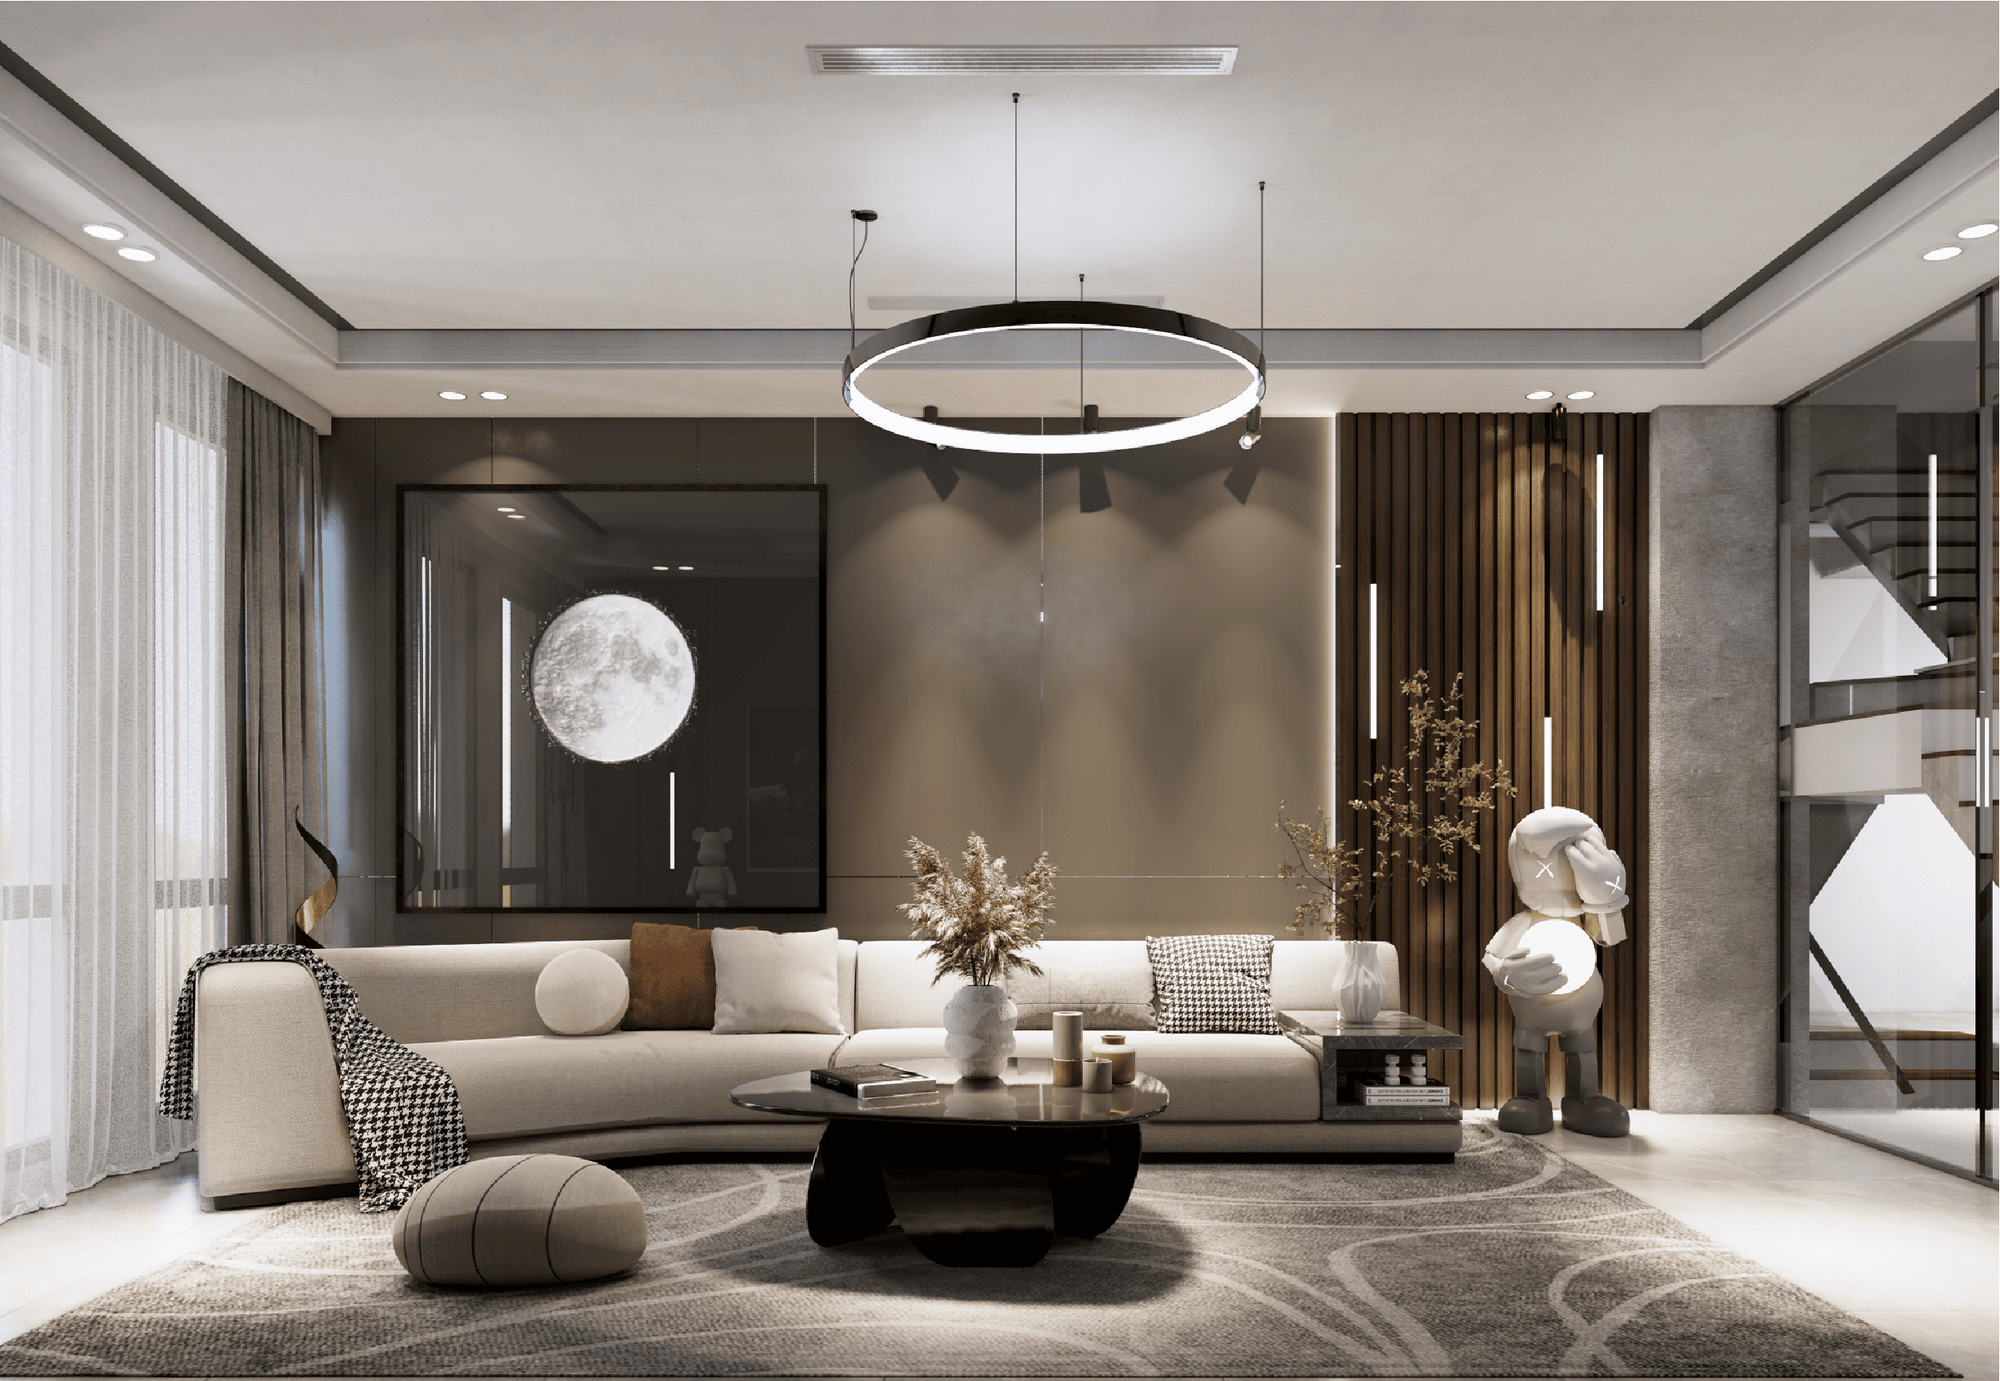 Living room 3D Design of Hieu Huong's House Interior design modern style | NTDecor